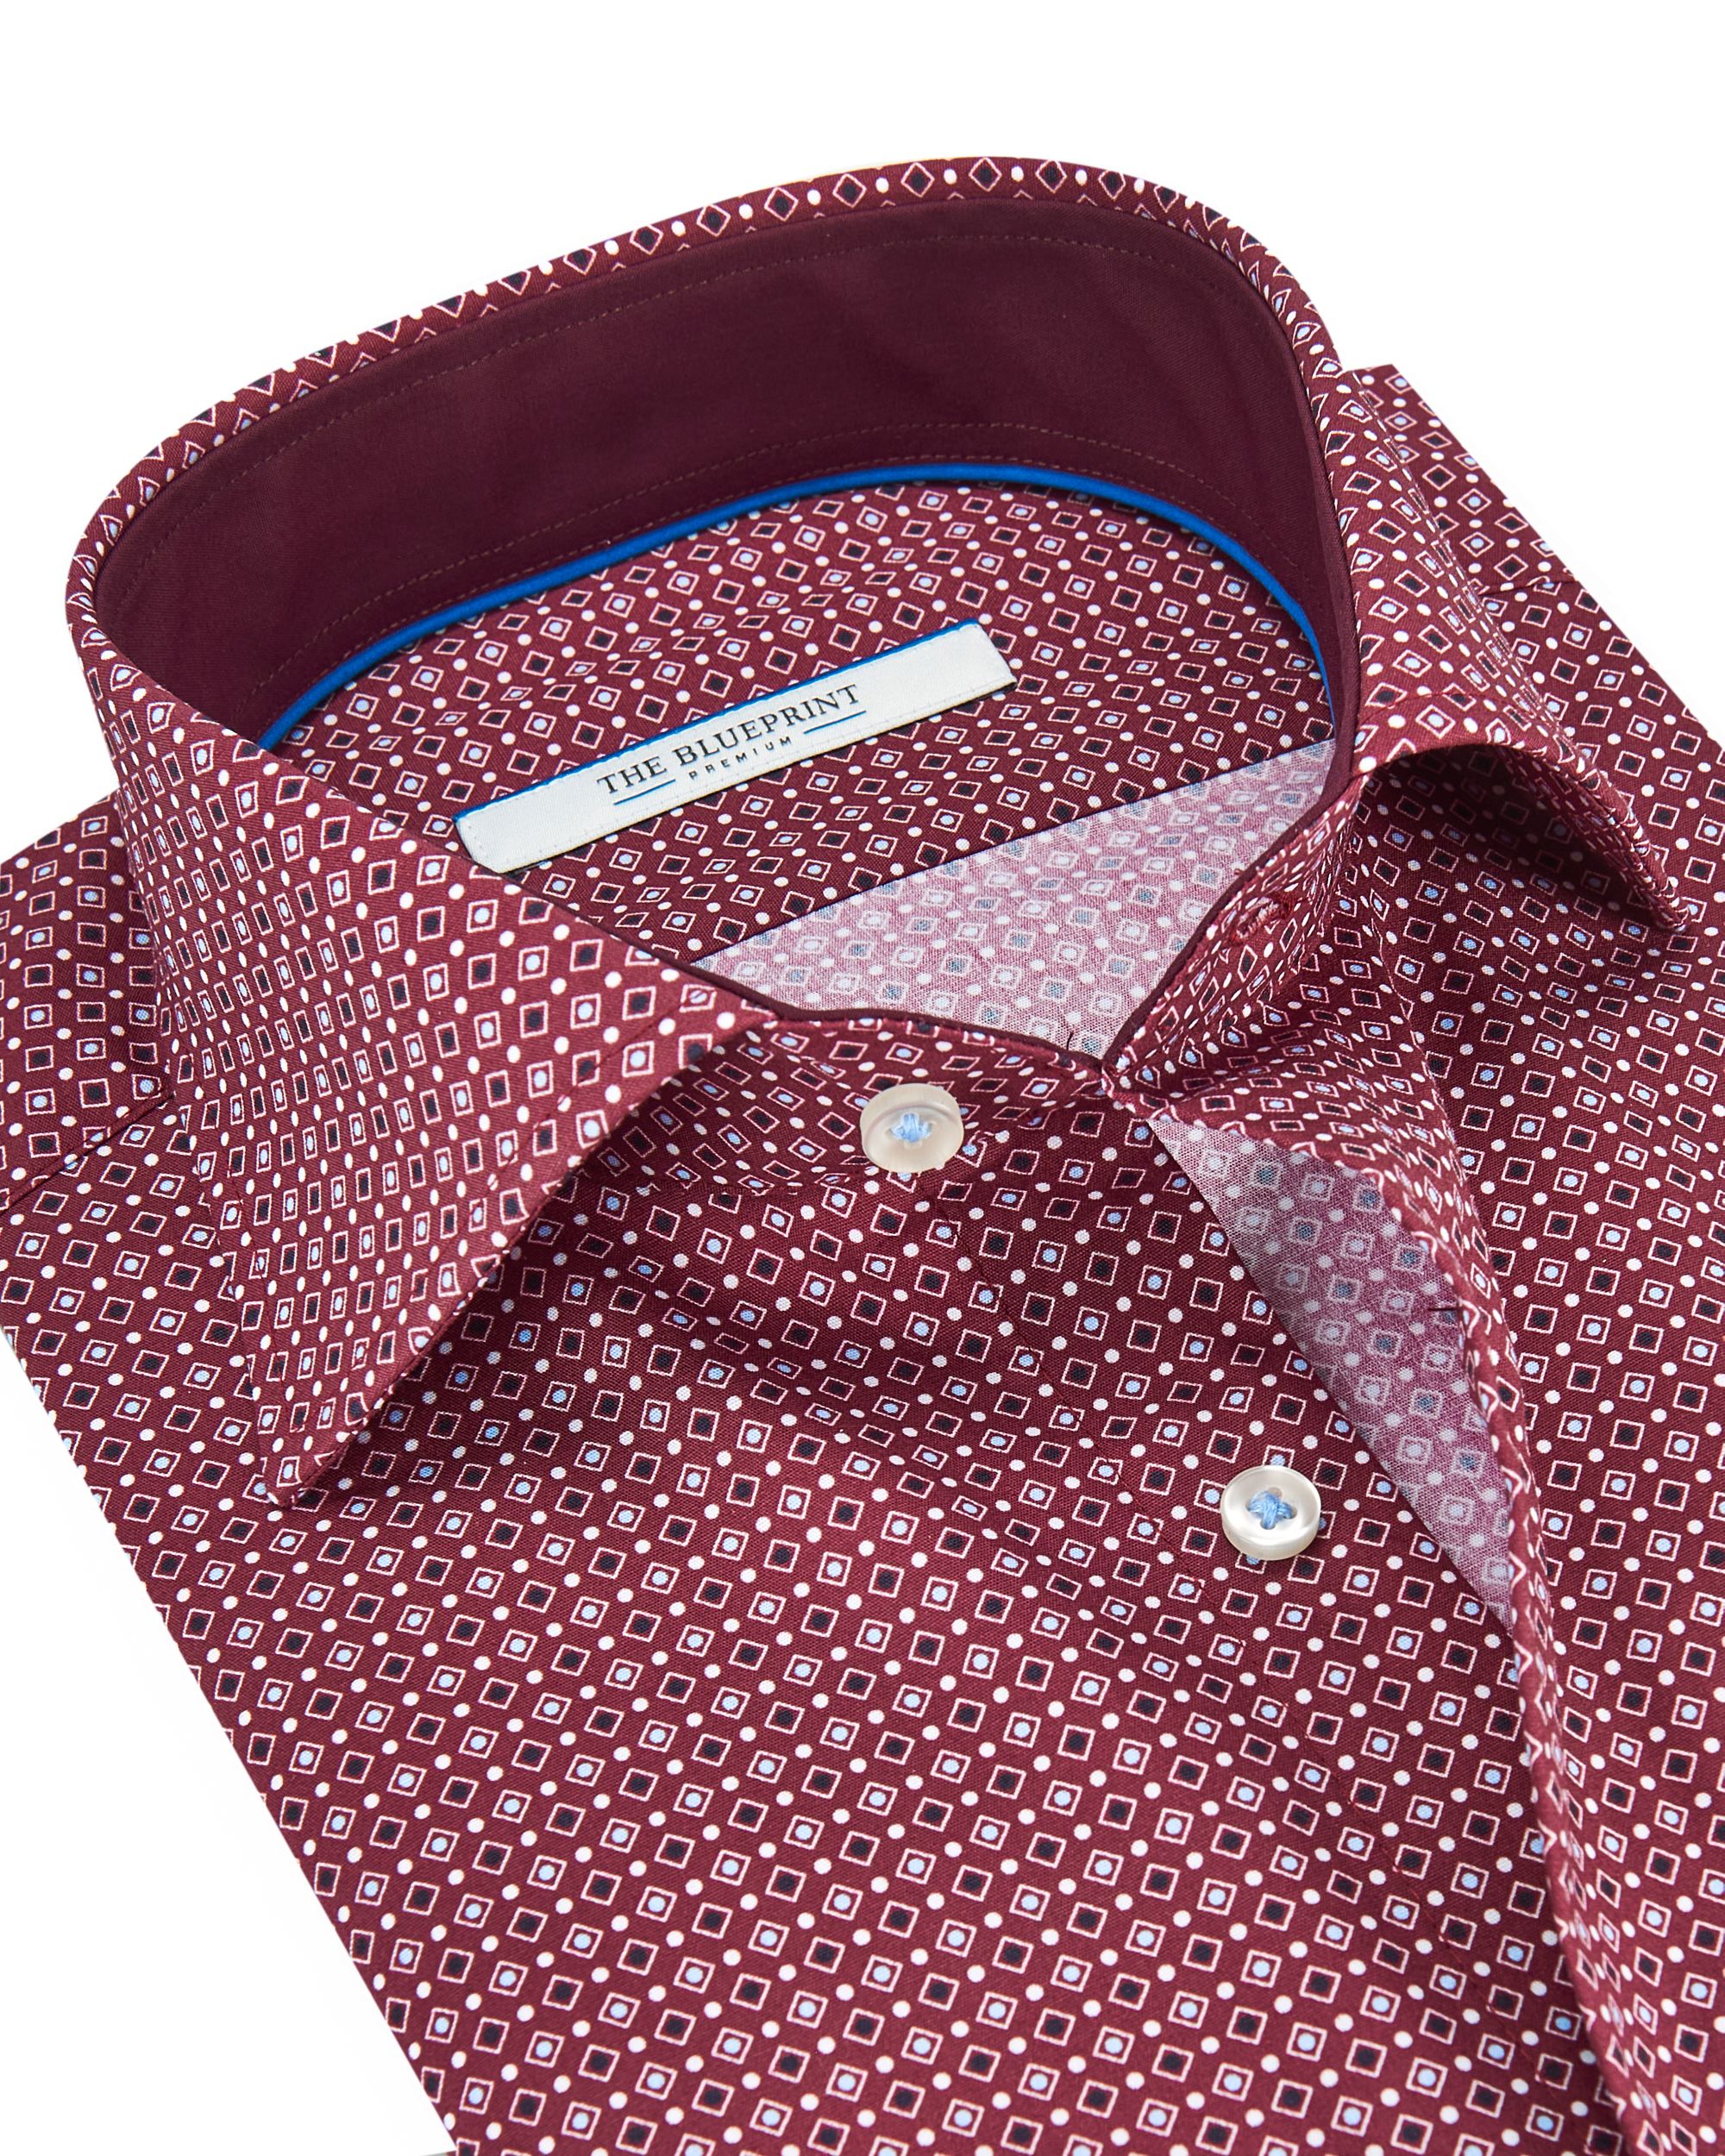 The BLUEPRINT Premium Casual Overhemd LM Bordeaux dessin 082210-001-L